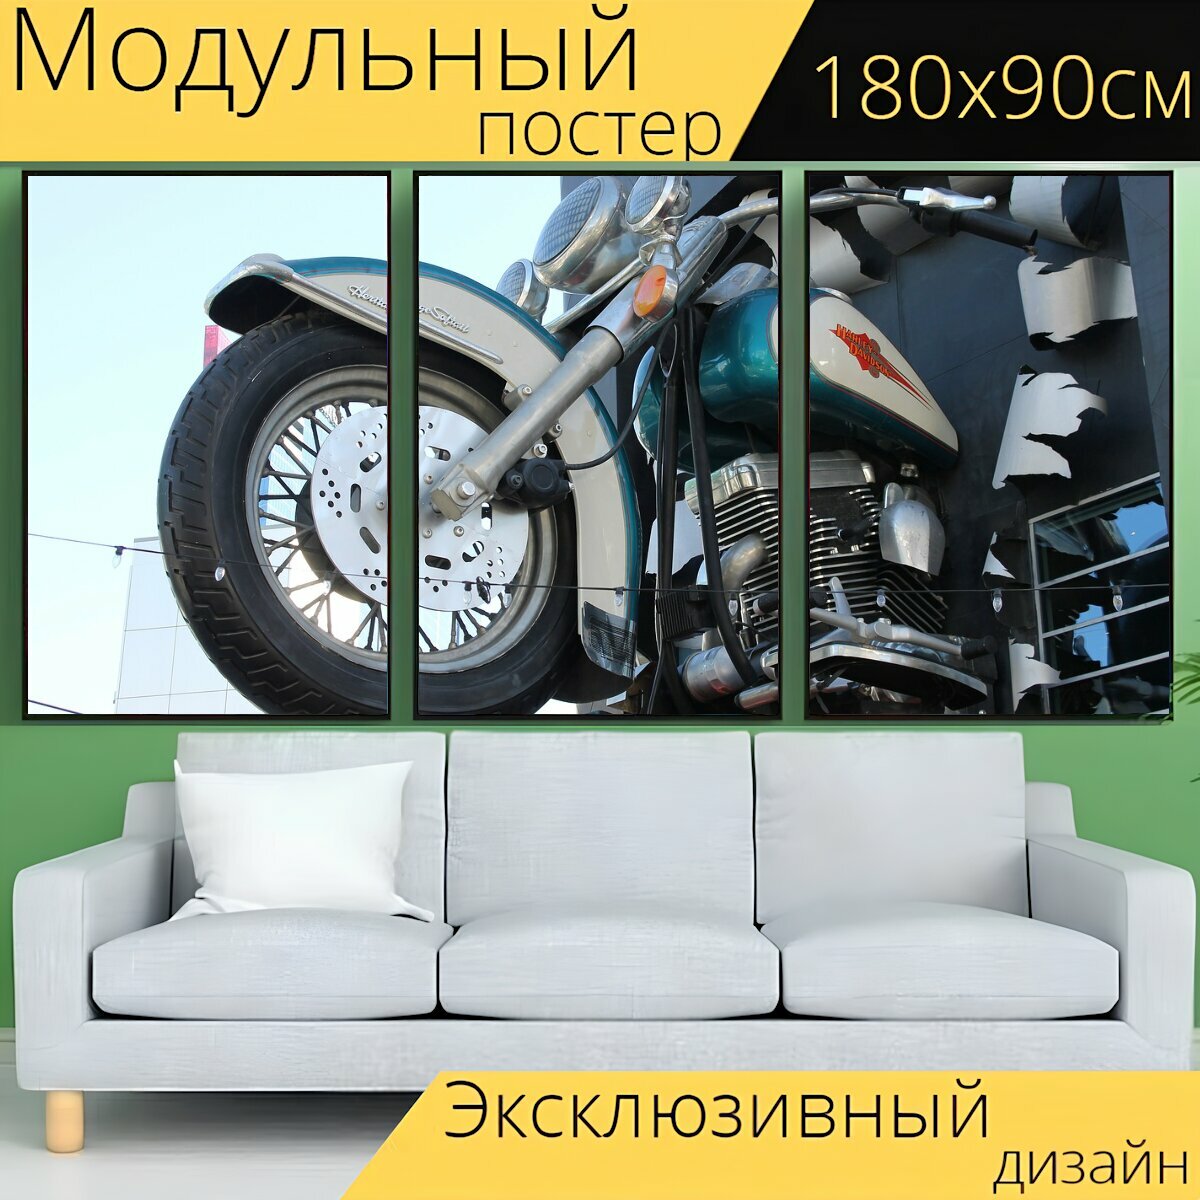 Модульный постер "Мотоцикл, харлей, дэвидсон" 180 x 90 см. для интерьера